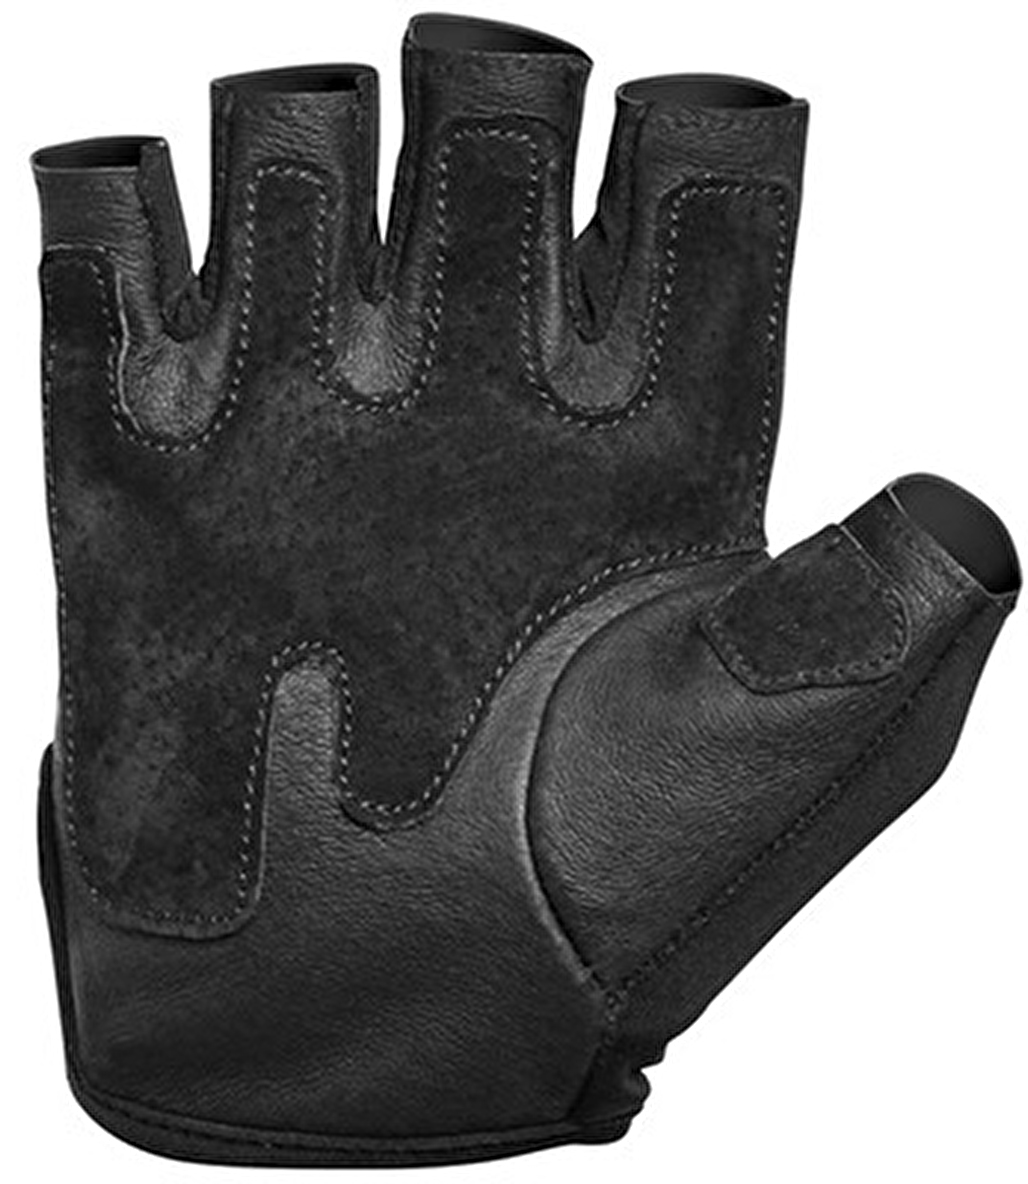 Harbinger Women's Pro Glove